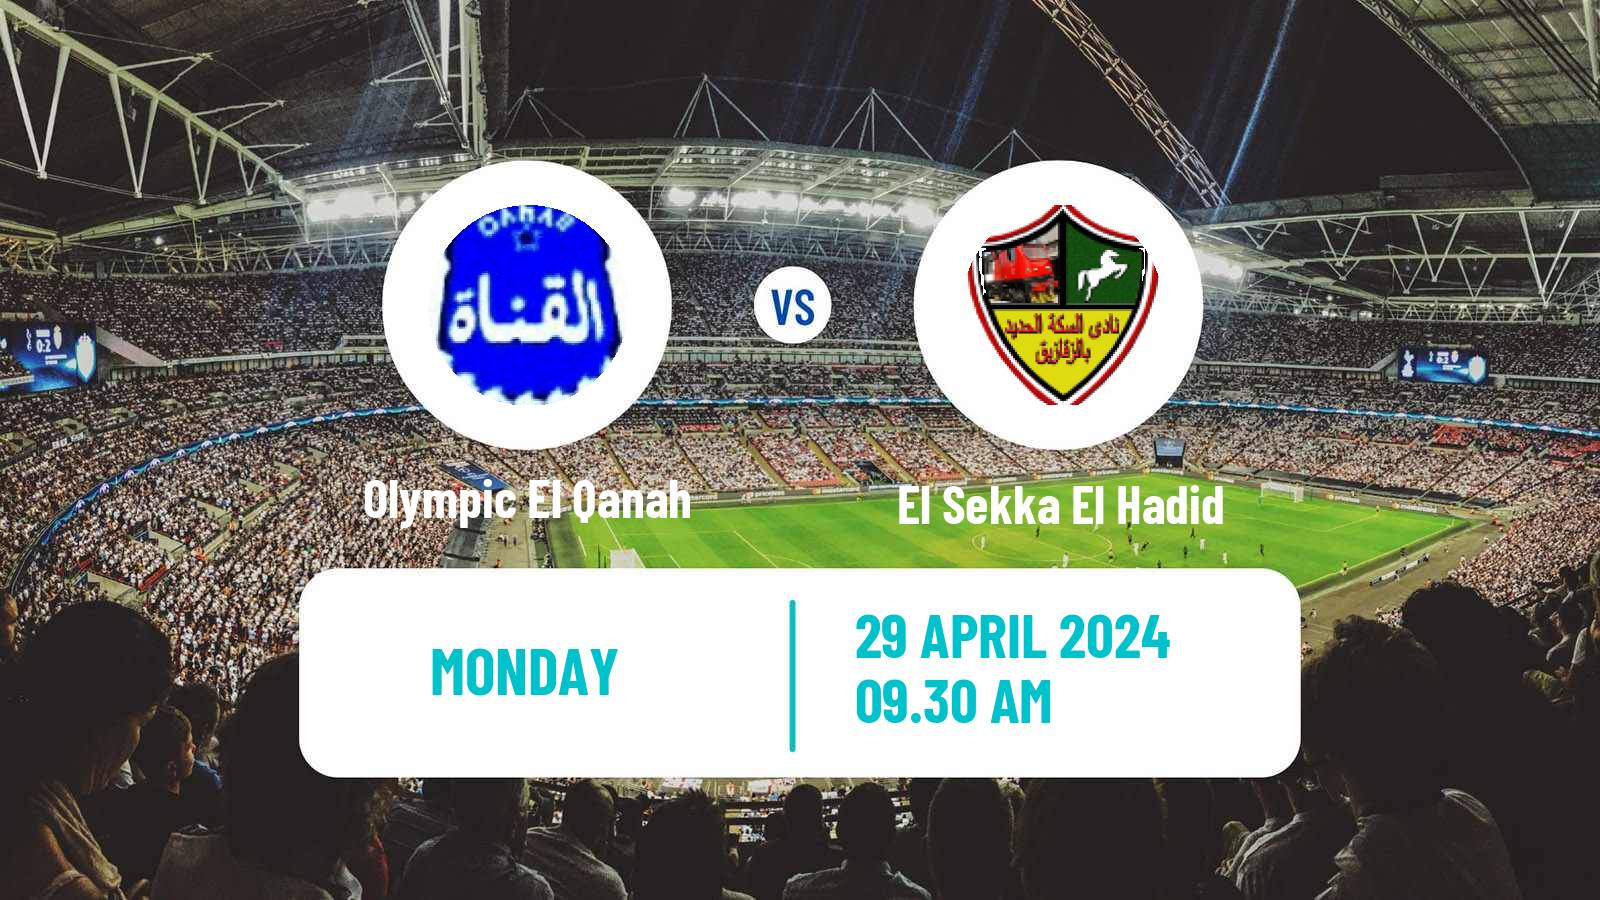 American football Egyptian Division 2 A Olympic El Qanah - El Sekka El Hadid